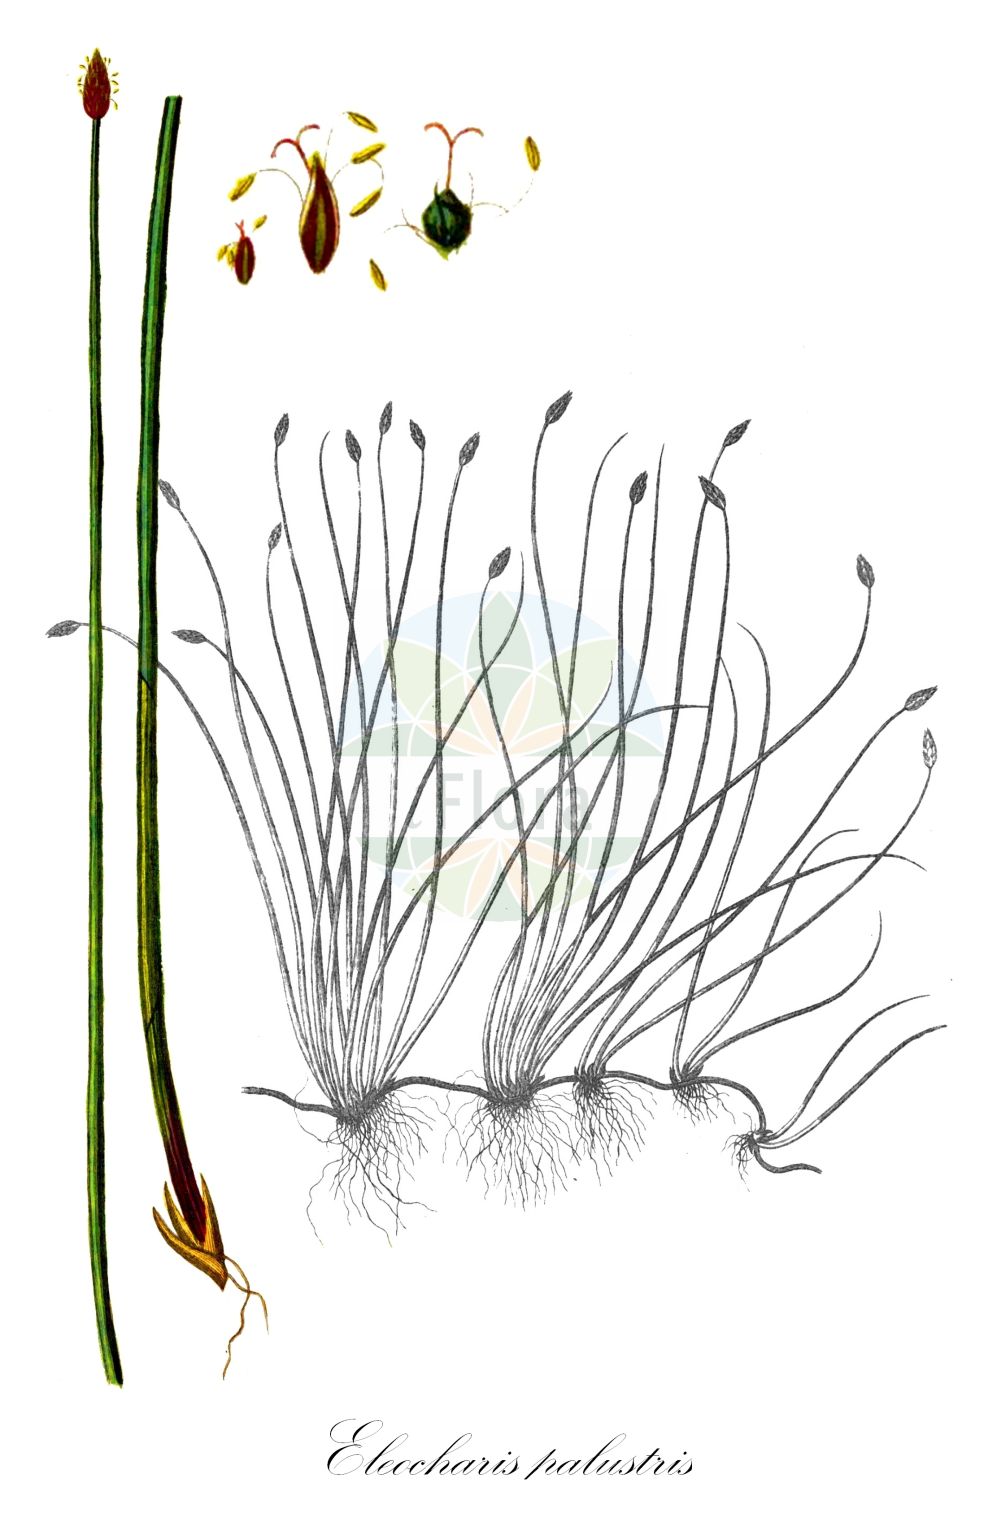 Historische Abbildung von Eleocharis palustris (Echte Sumpfsimse - Common Spike-rush). Das Bild zeigt Blatt, Bluete, Frucht und Same. ---- Historical Drawing of Eleocharis palustris (Echte Sumpfsimse - Common Spike-rush). The image is showing leaf, flower, fruit and seed.(Eleocharis palustris,Echte Sumpfsimse,Common Spike-rush,Eleocharis palustris,Scirpus palustris,Echte Sumpfsimse,Gewoehnliche Sumpfbinse,Common Spike-rush,Creeping Spikerush,Eleocharis,Sumpfbinse,Spikerush,Cyperaceae,Sauergräser,Sedge family,Blatt,Bluete,Frucht,Same,leaf,flower,fruit,seed,Oeder (1761-1883))